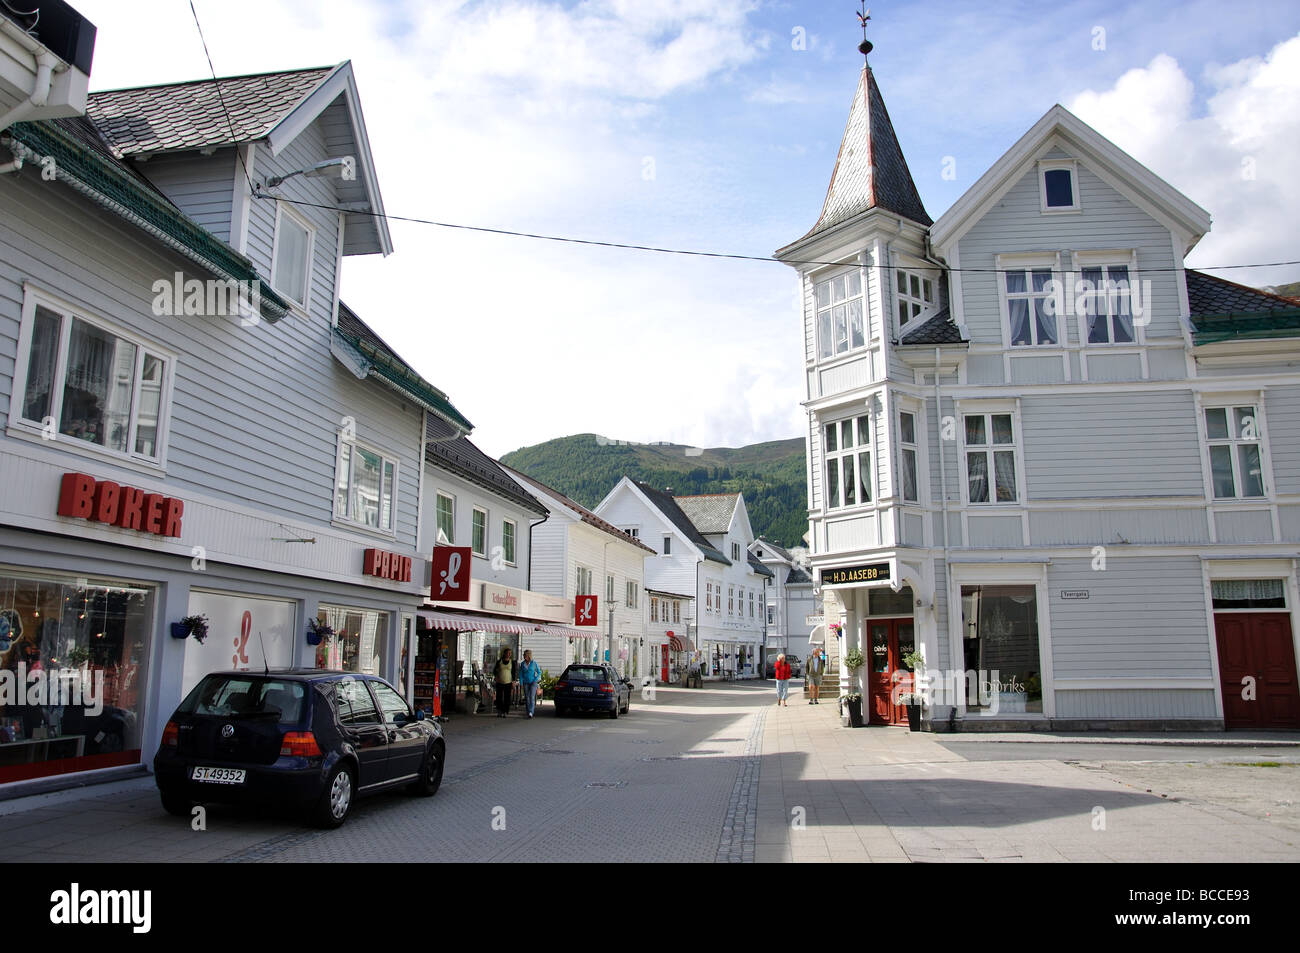 Town Centre, Eidsgata, Nordfjordeid, Sogn og Fjordane, Norway Stock Photo